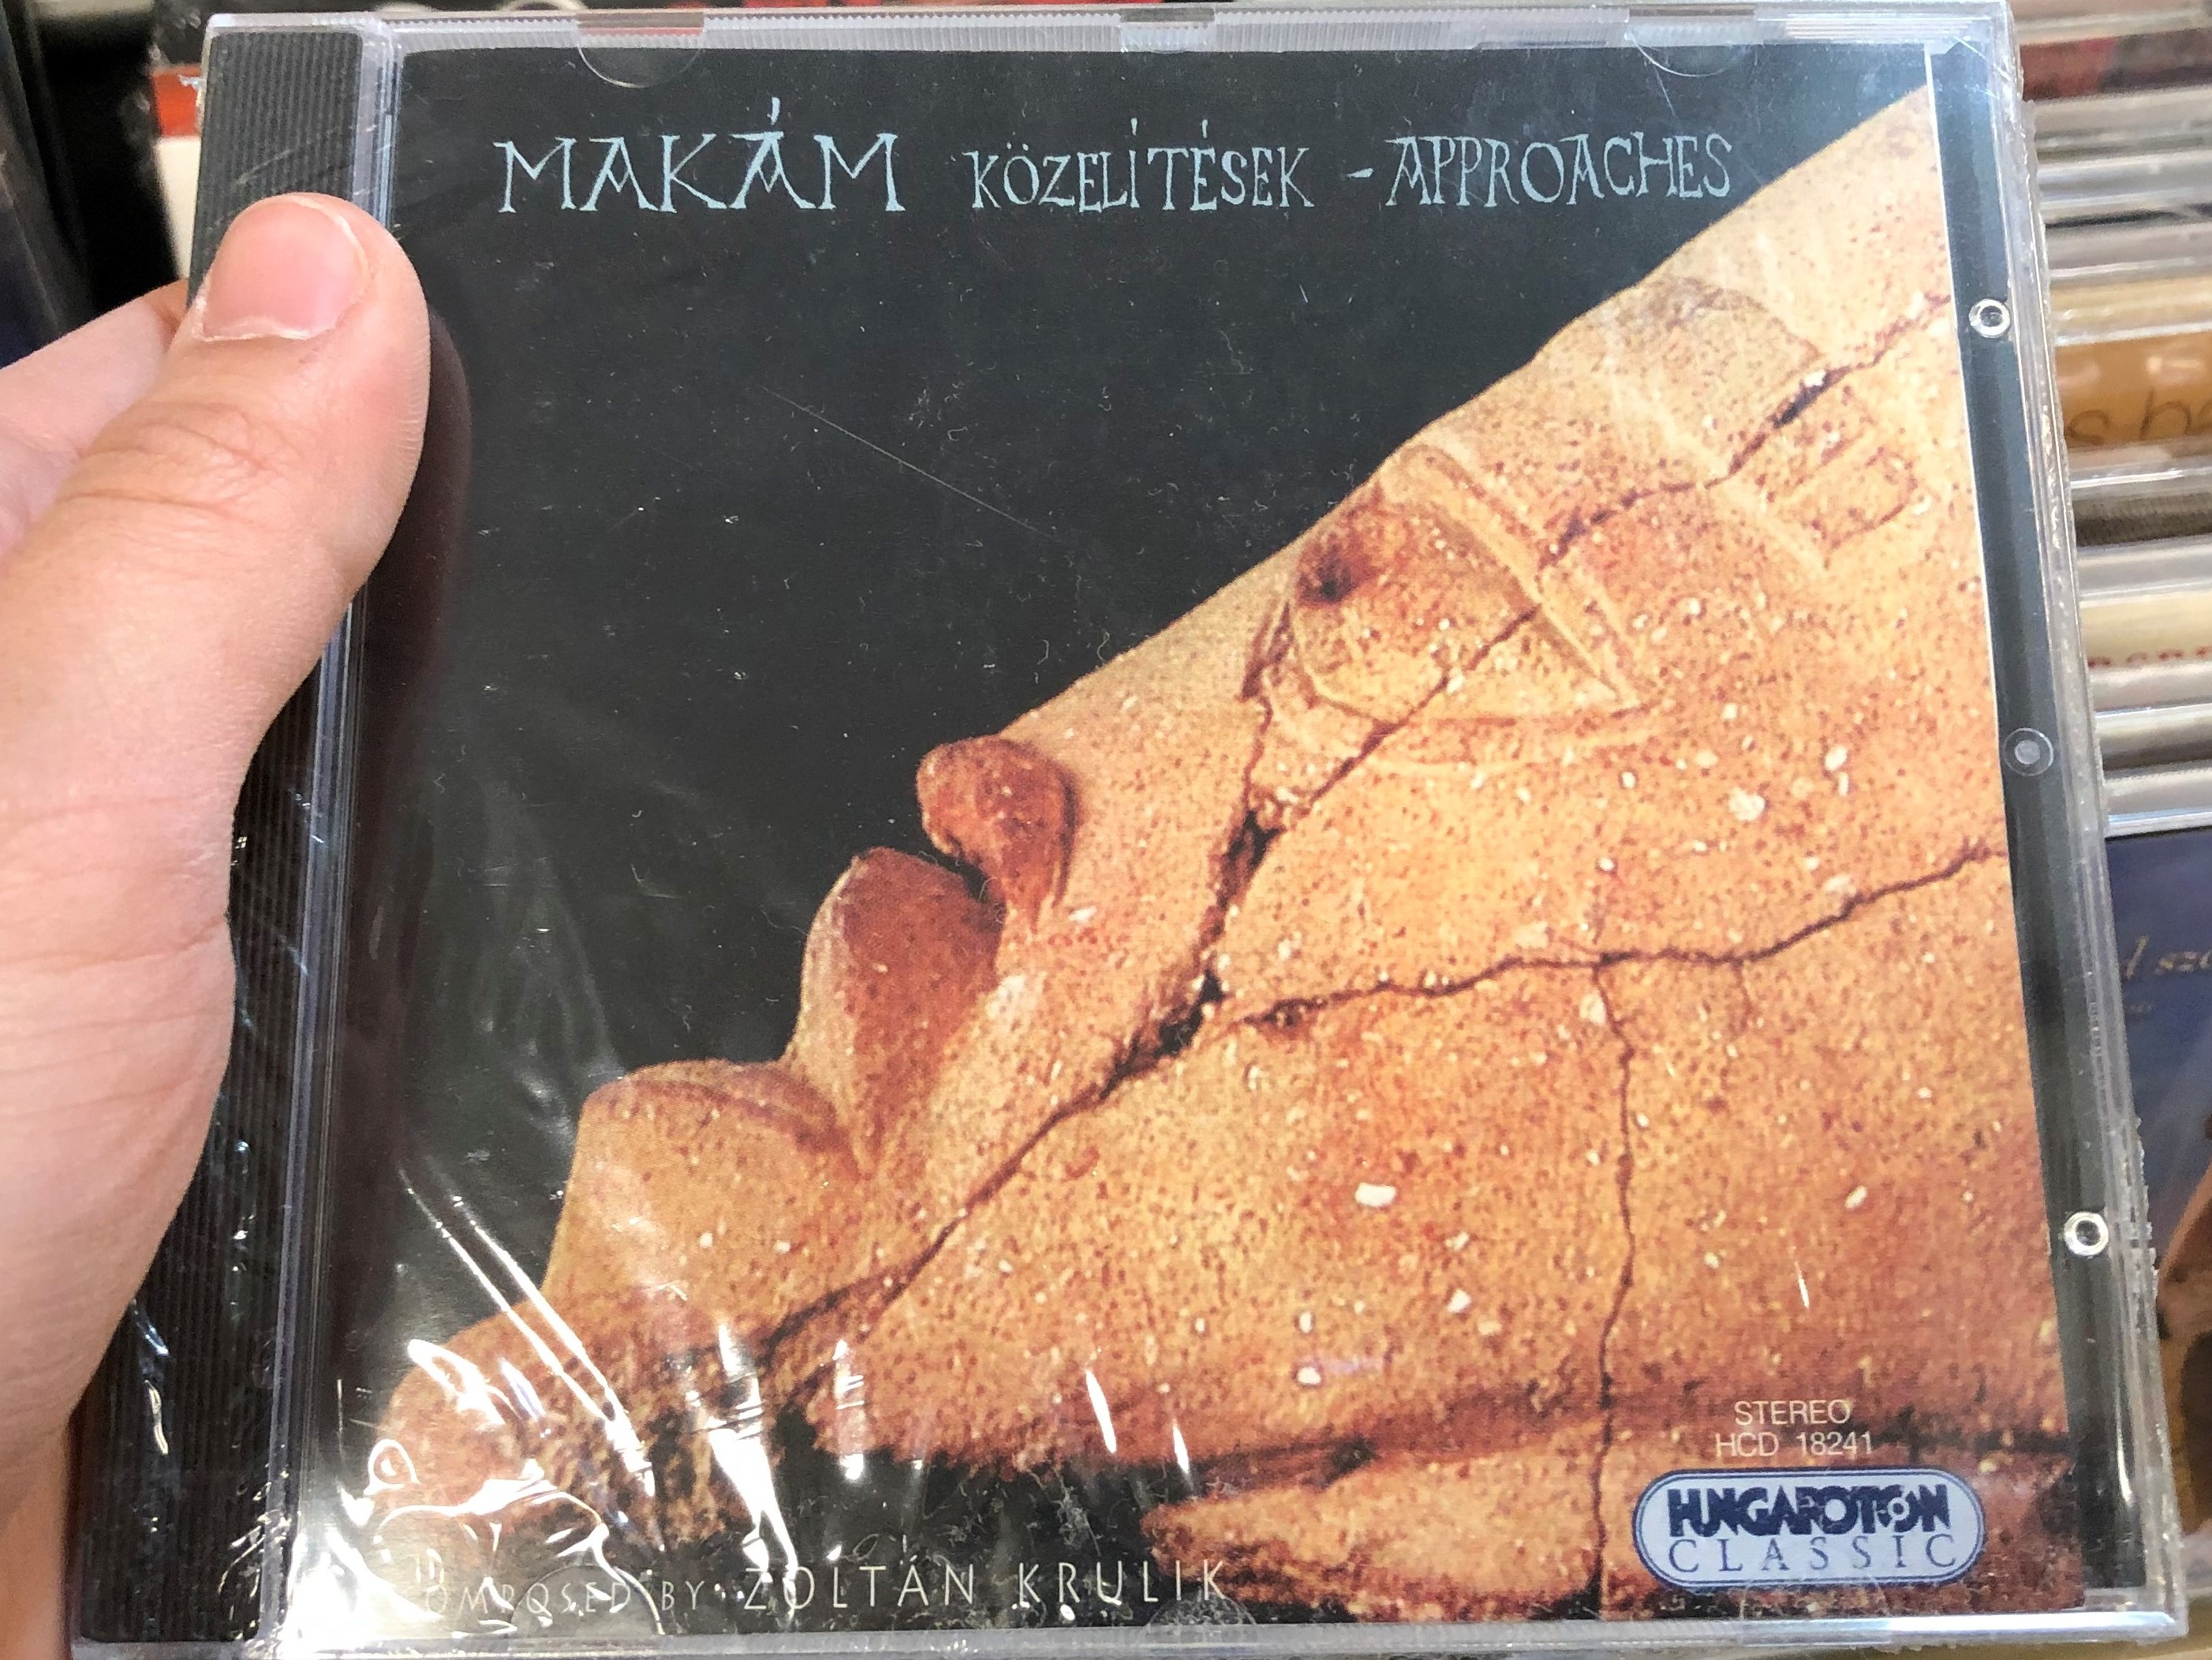 mak-m-k-zel-t-sek-approaches-composed-by-zolt-n-krulik-hungaroton-classic-audio-cd-1999-stereo-hcd-18241-1-.jpg